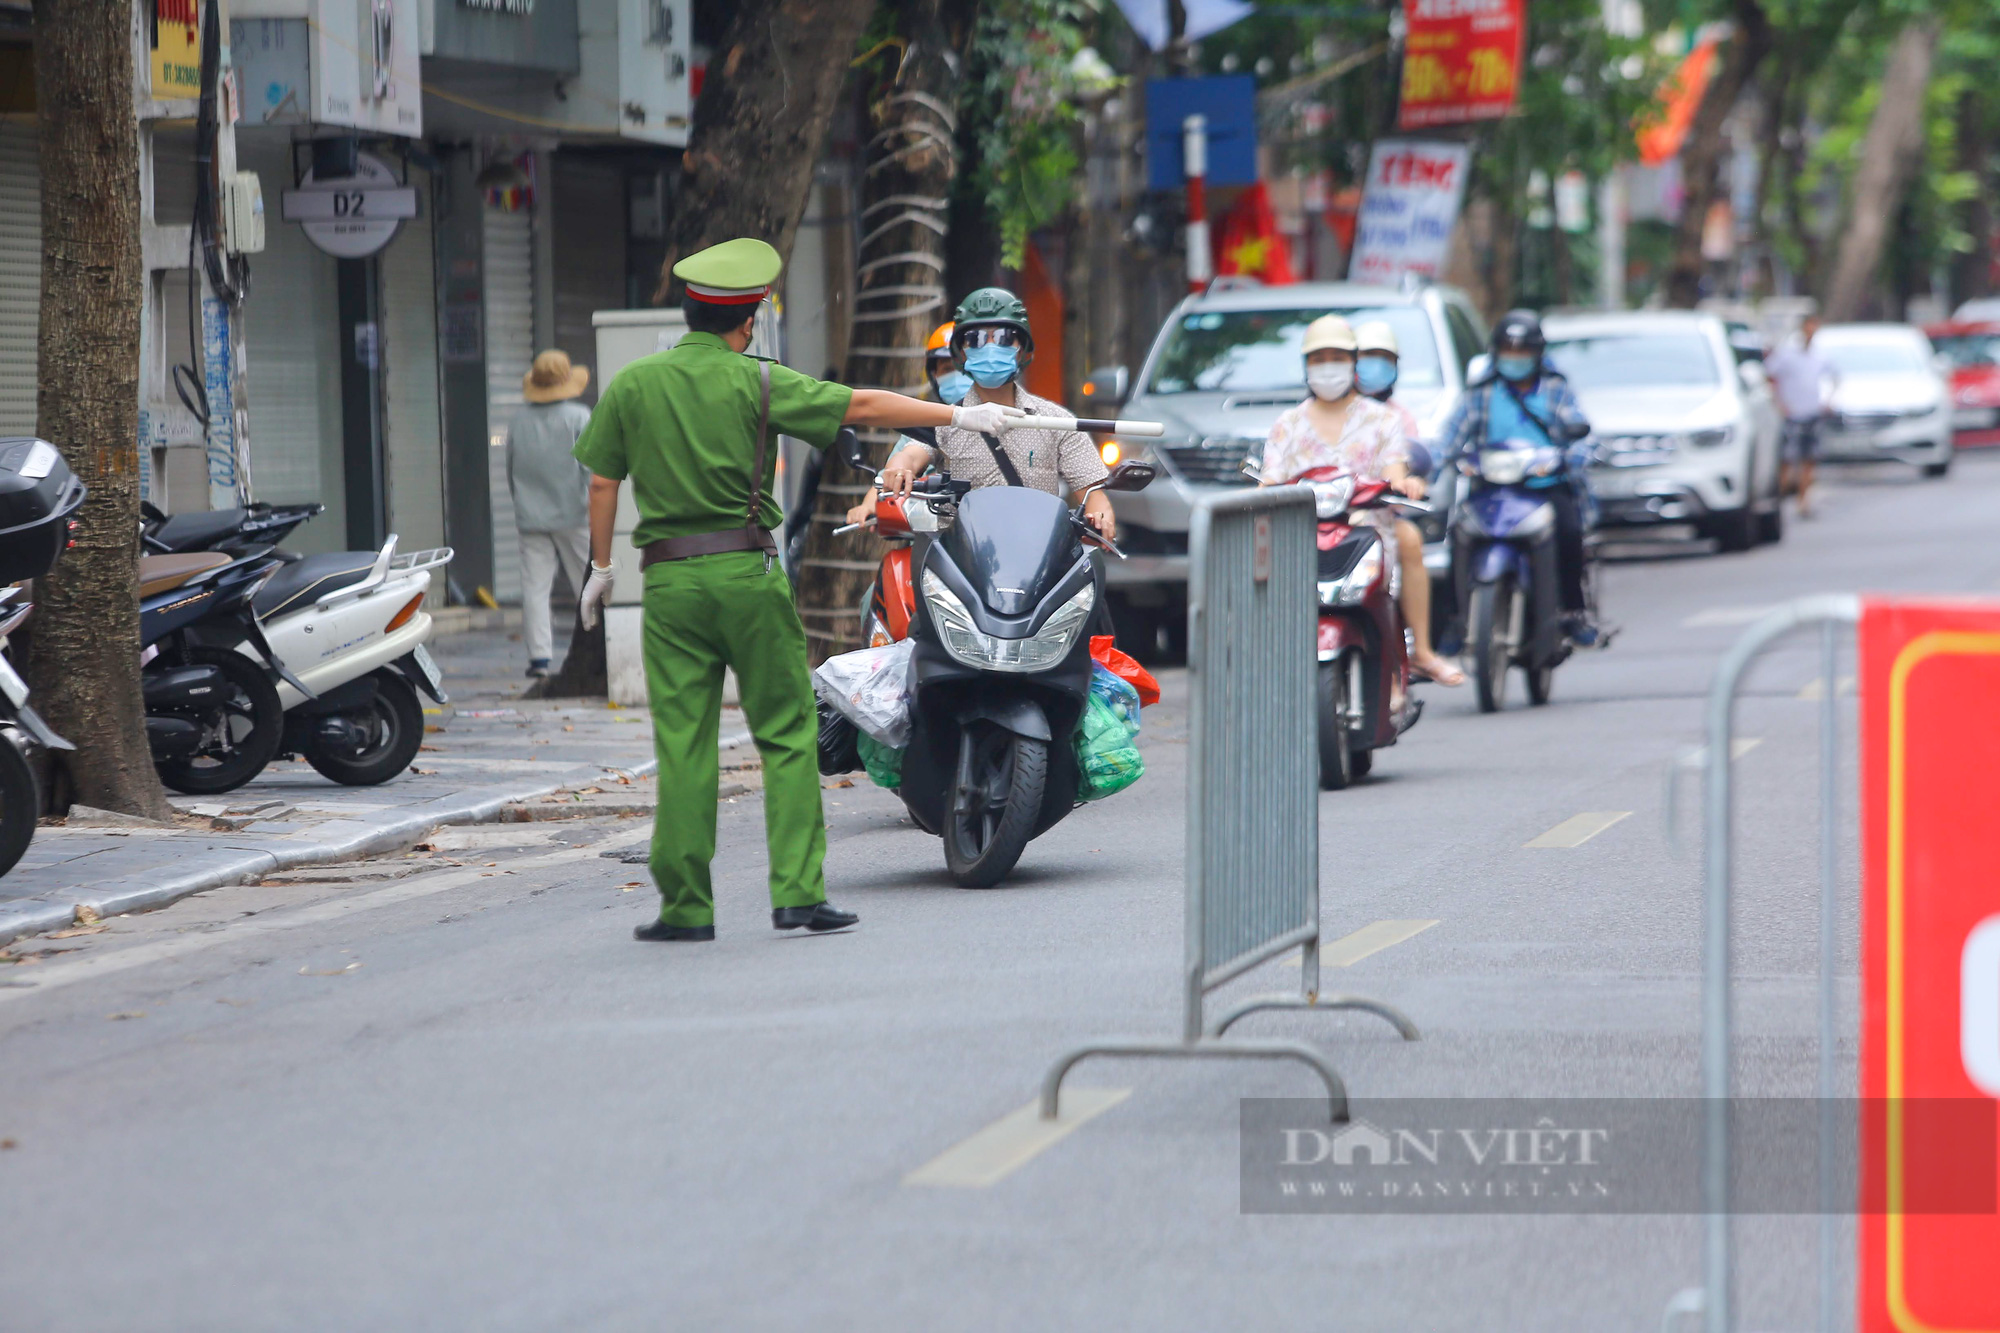 Không đeo khẩu trang, quay đầu xe bỏ chạy khi thấy chốt kiểm soát người đi đường ở Hà Nội - Ảnh 2.